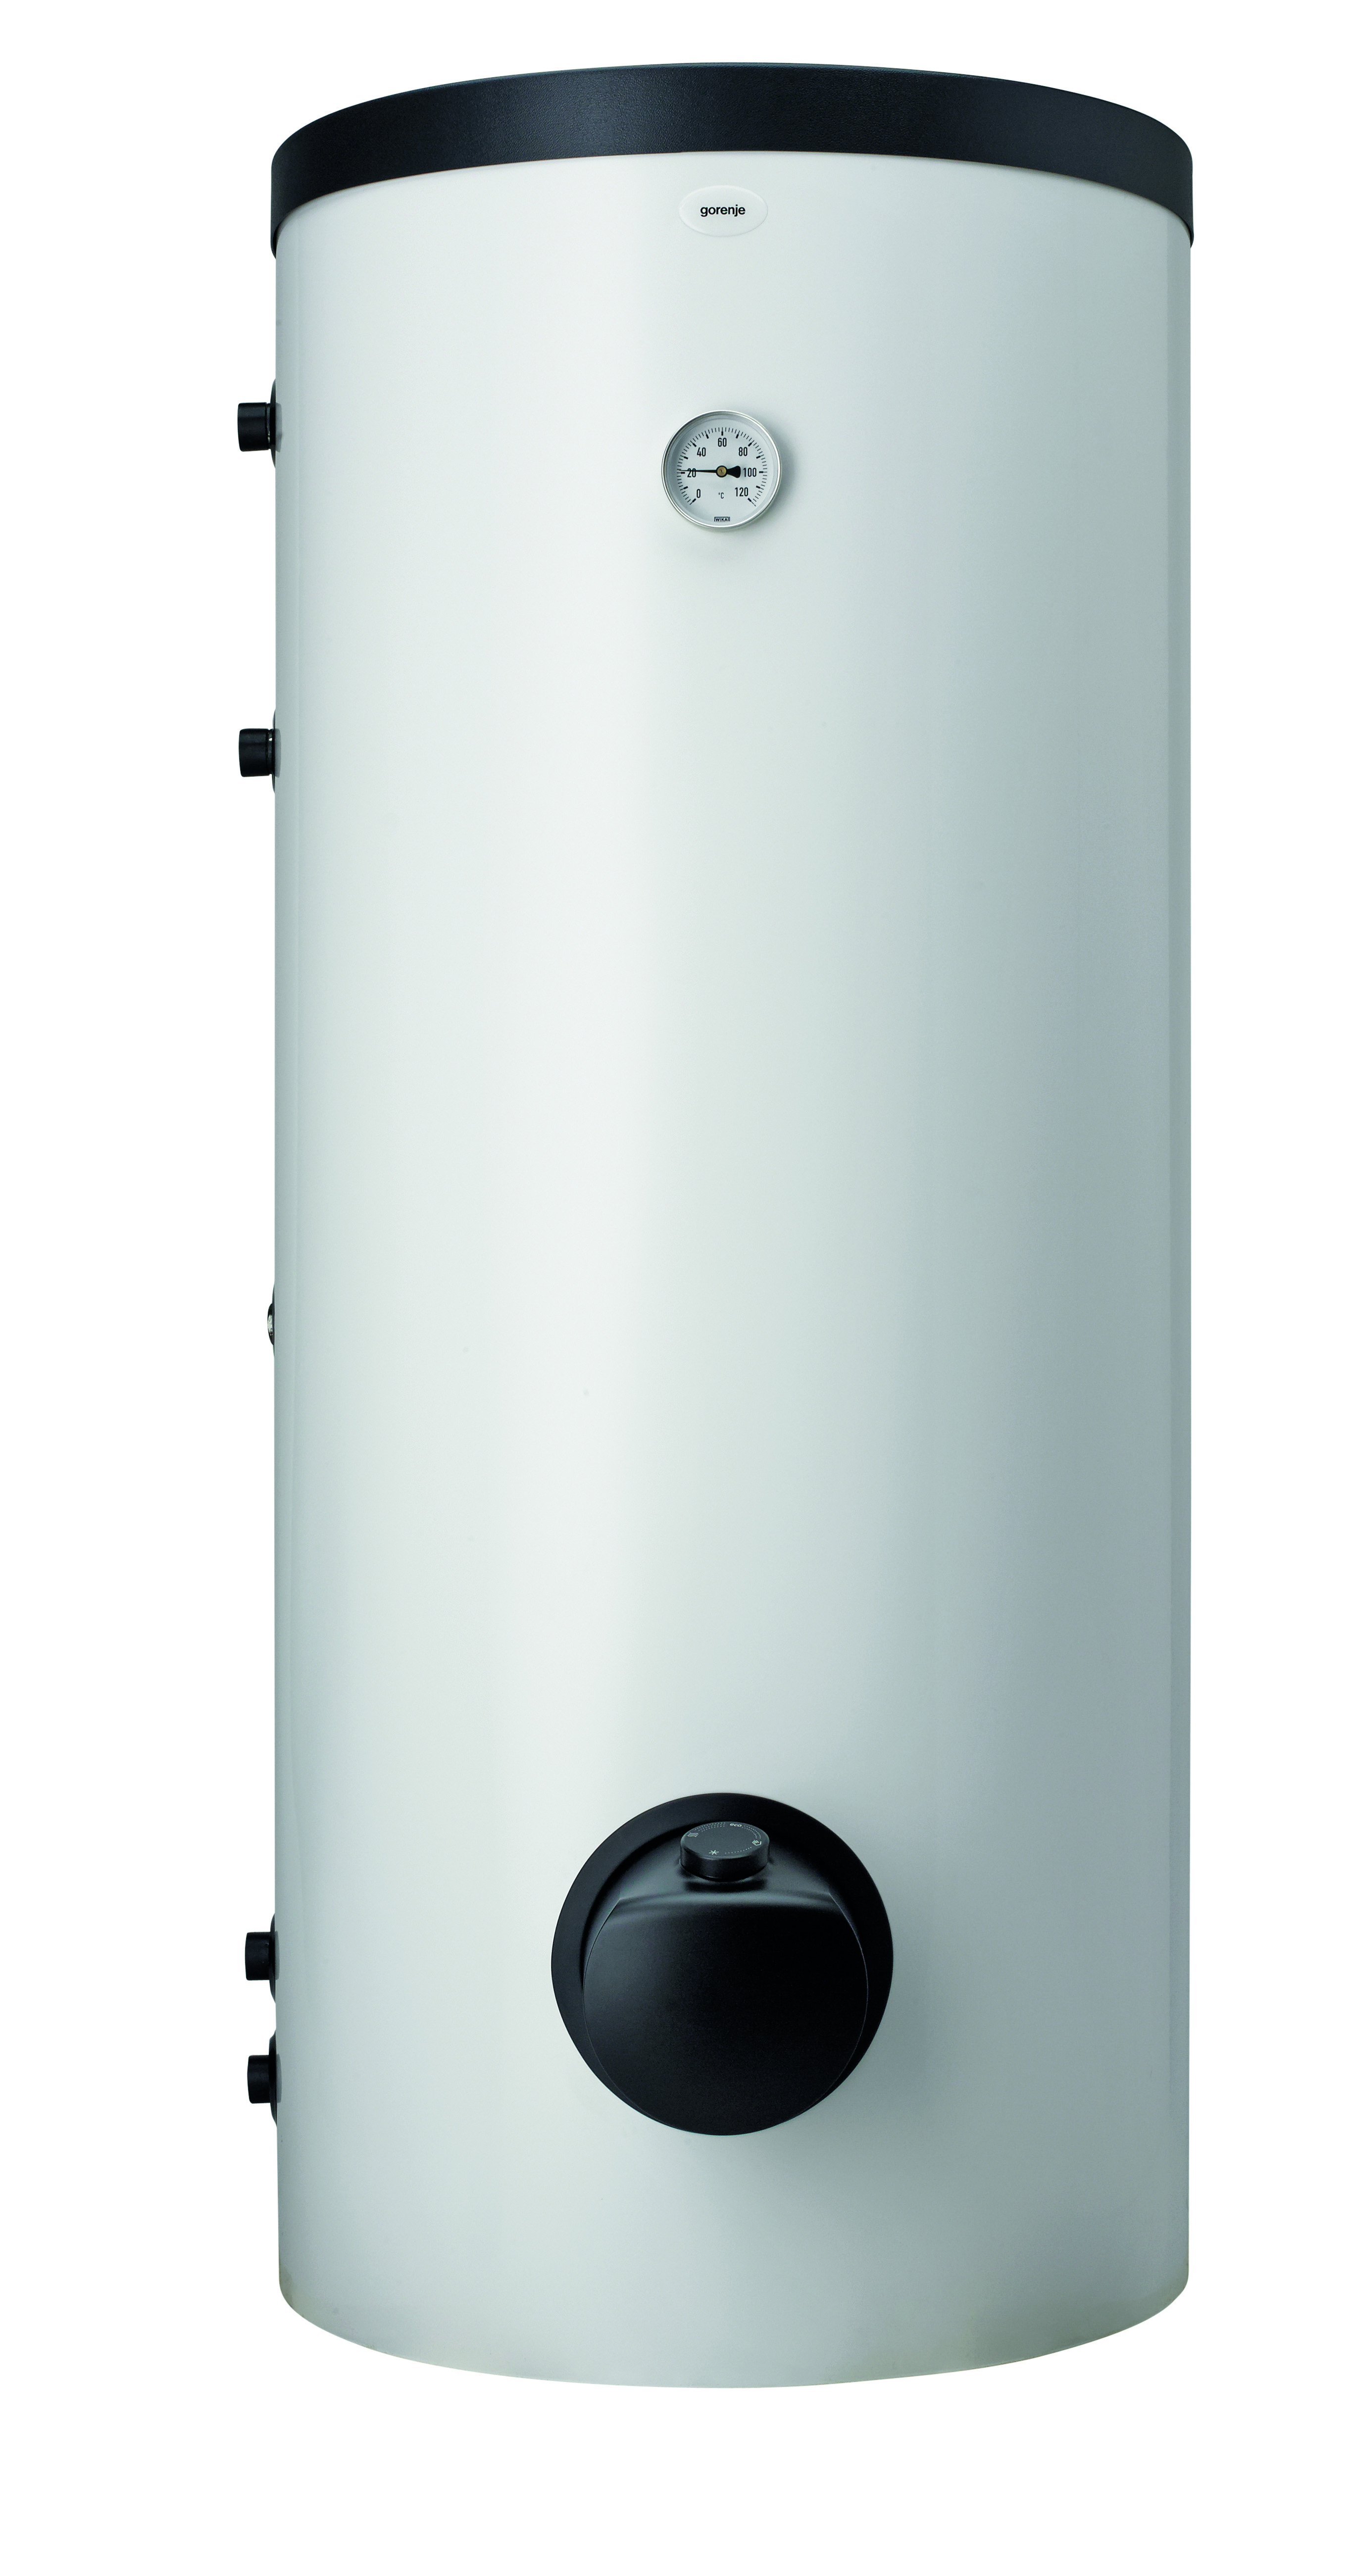 Отзывы водонагреватель комбинированный 300 л Gorenje VLG300B2-1G3 в Украине